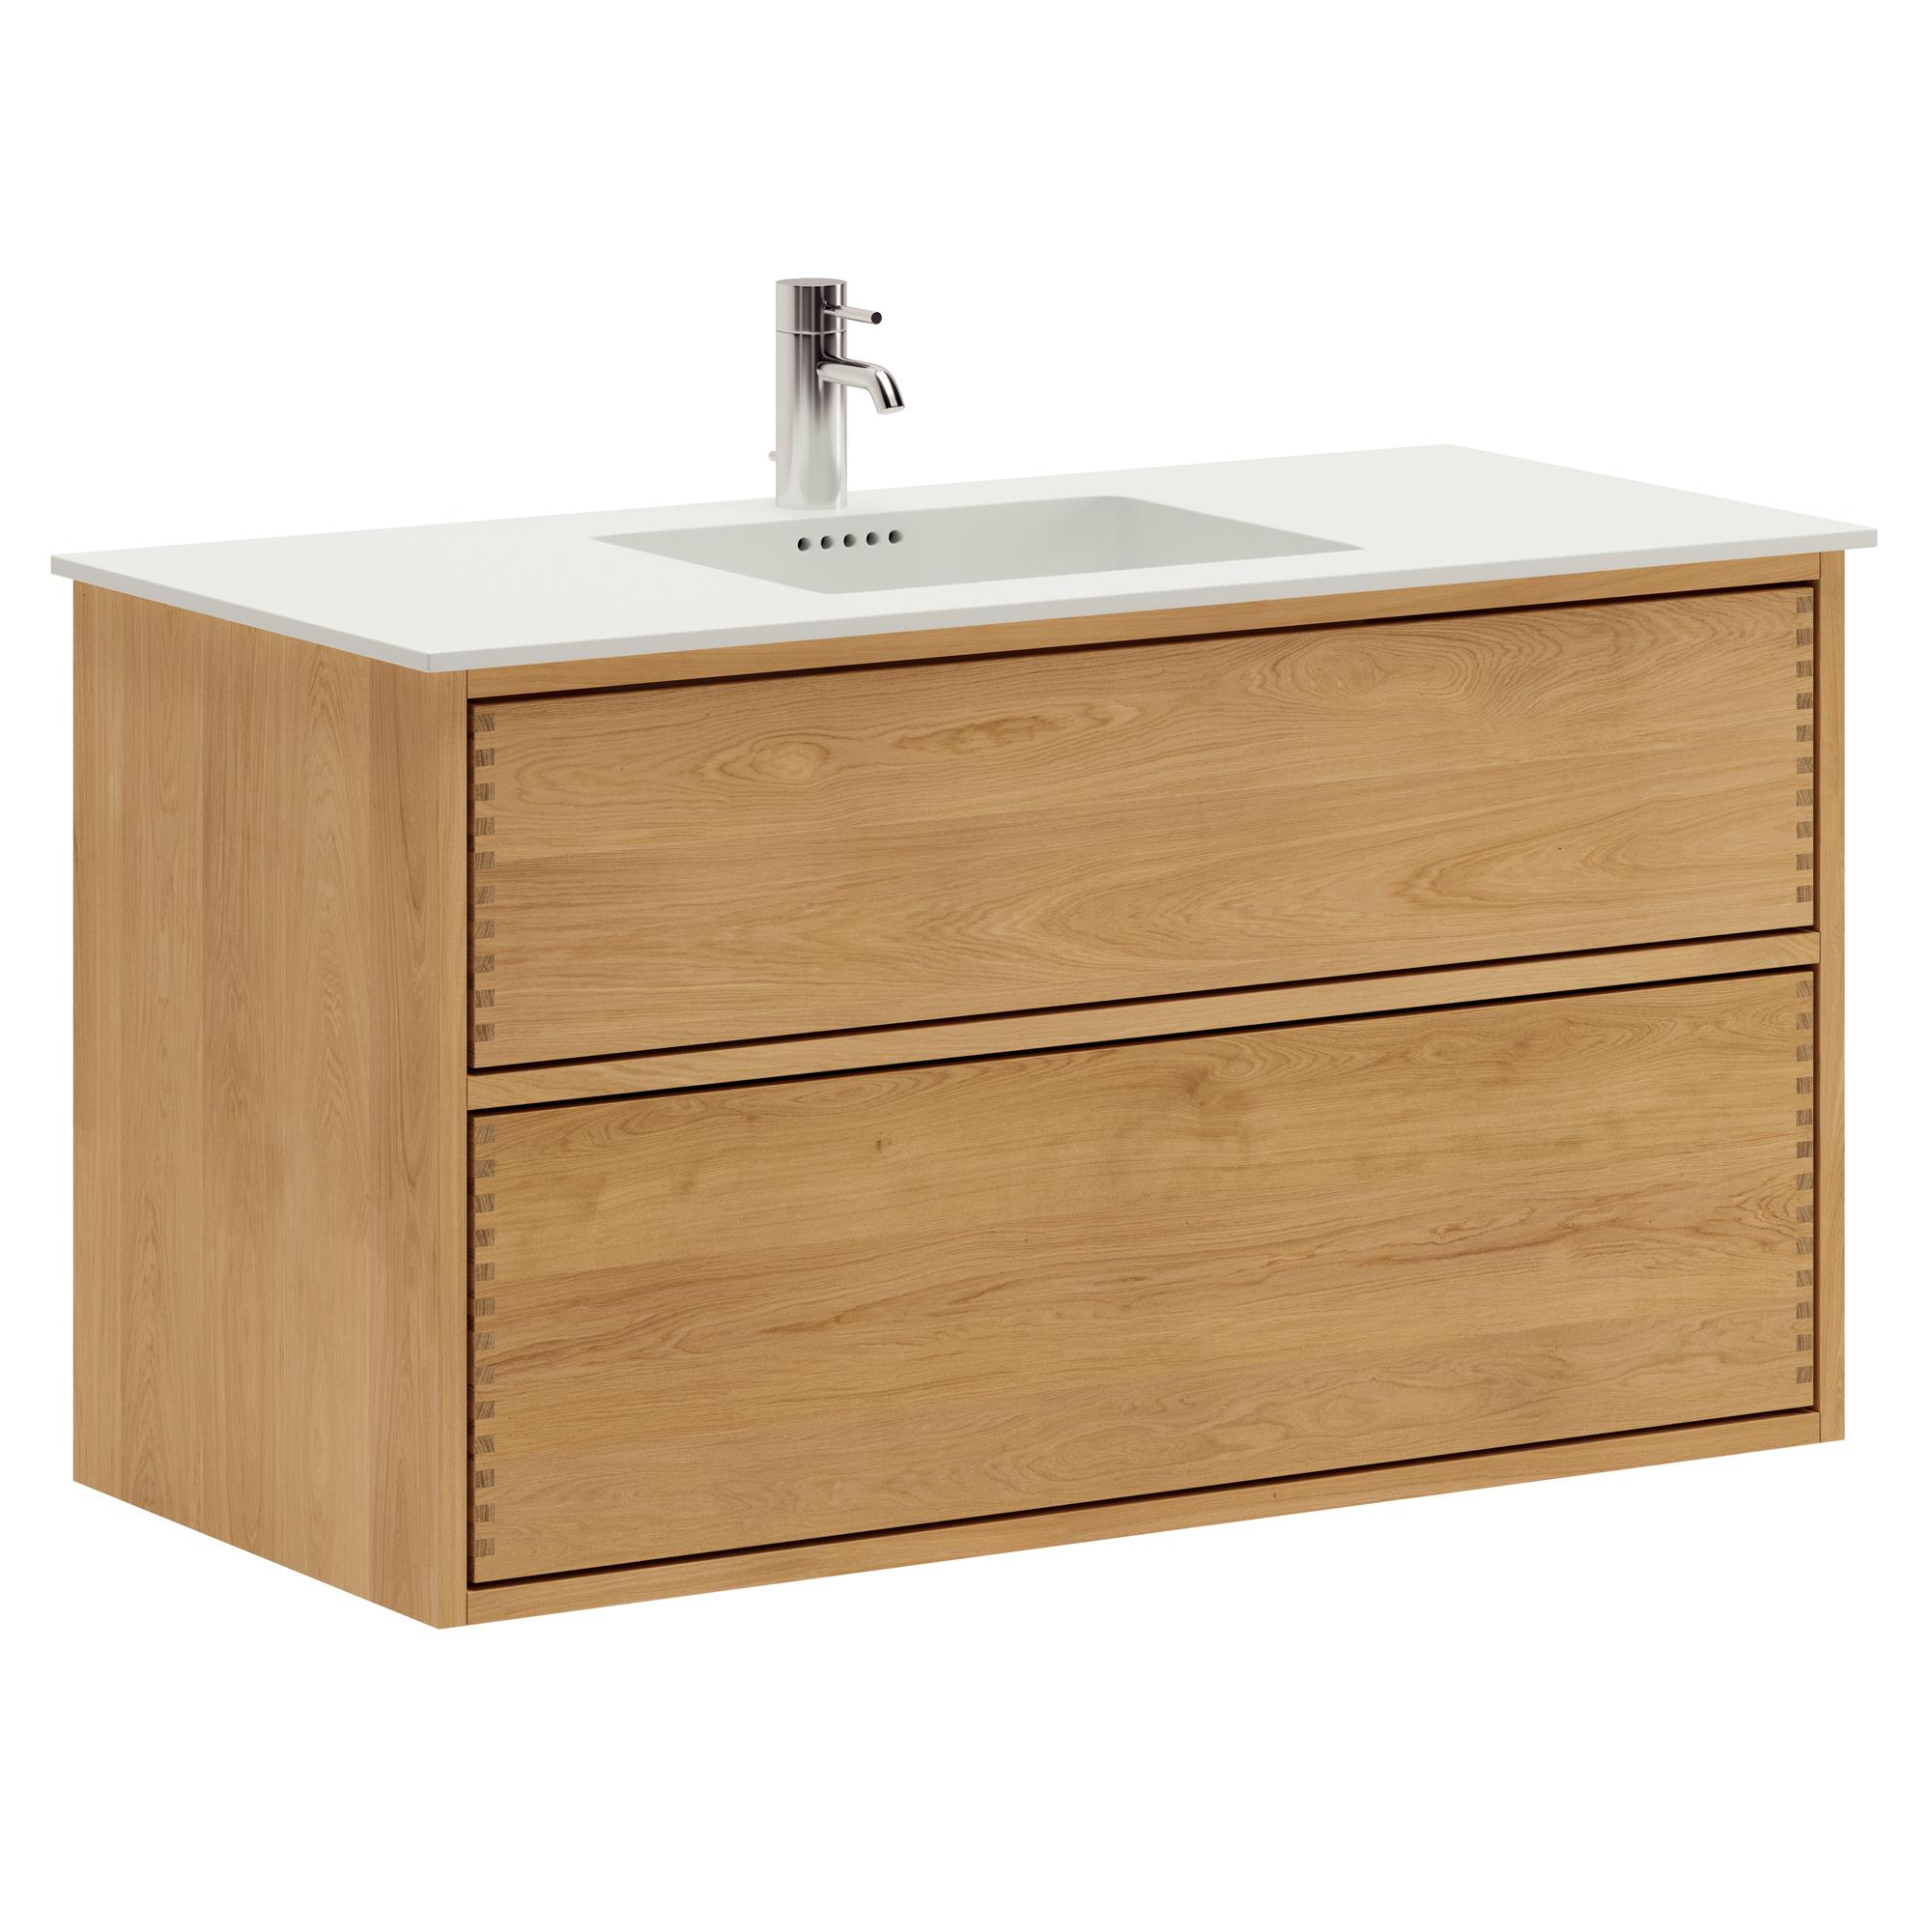 100 cm Just Wood Push Badezimmermöbel mit 2 Schubladen und Solid Surface-Waschbecken